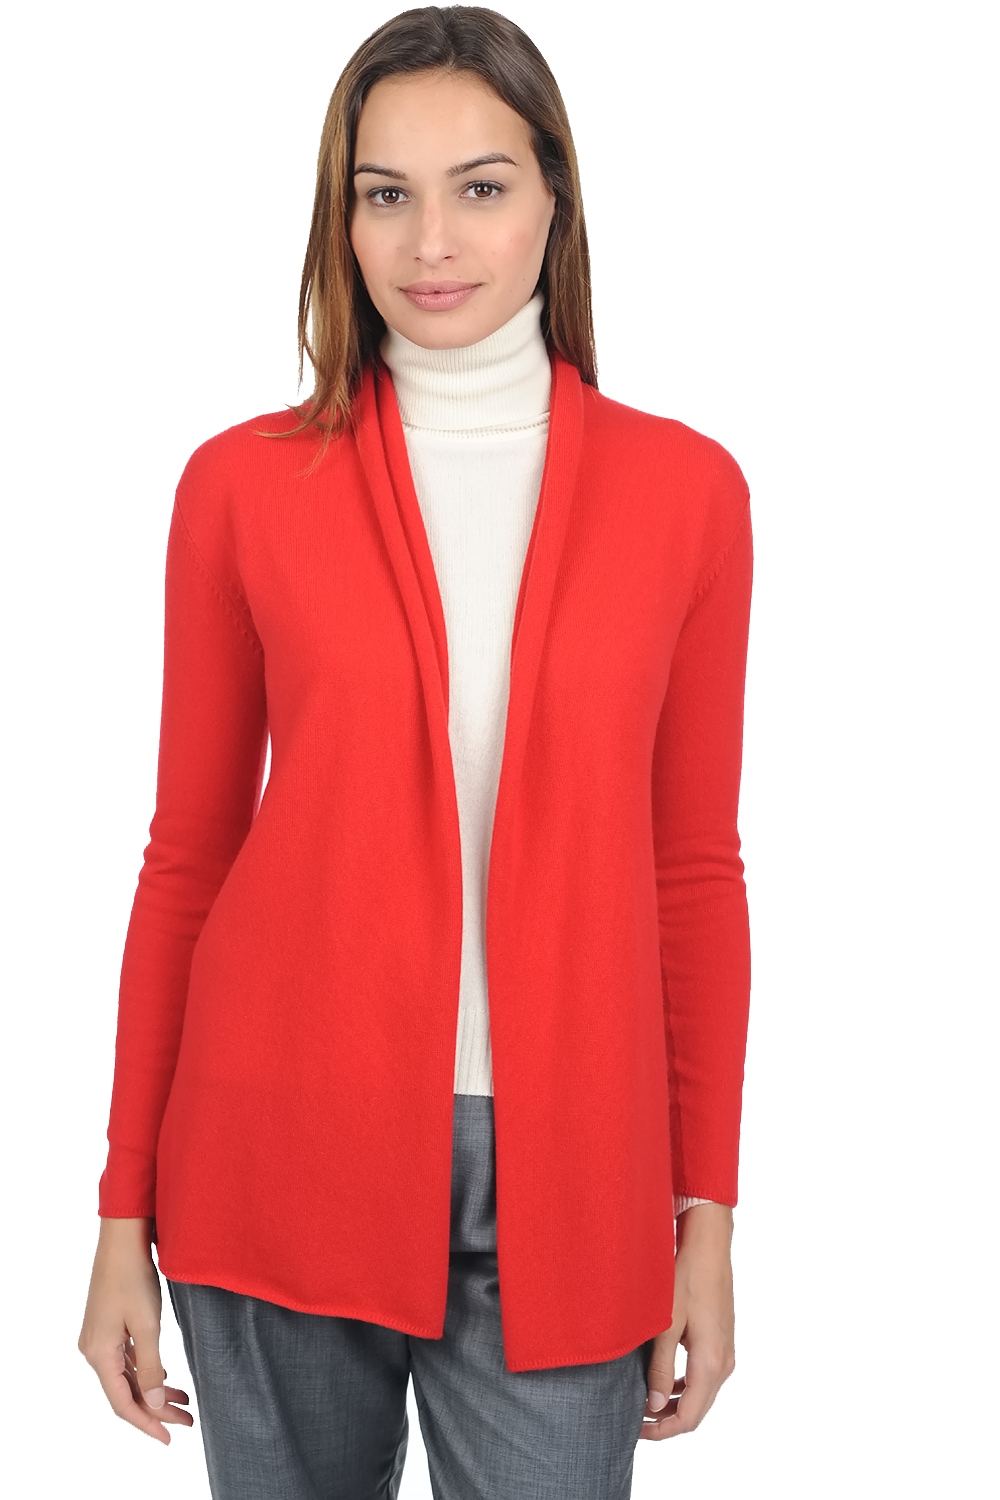 Cashmere ladies premium sweaters pucci premium tango red l